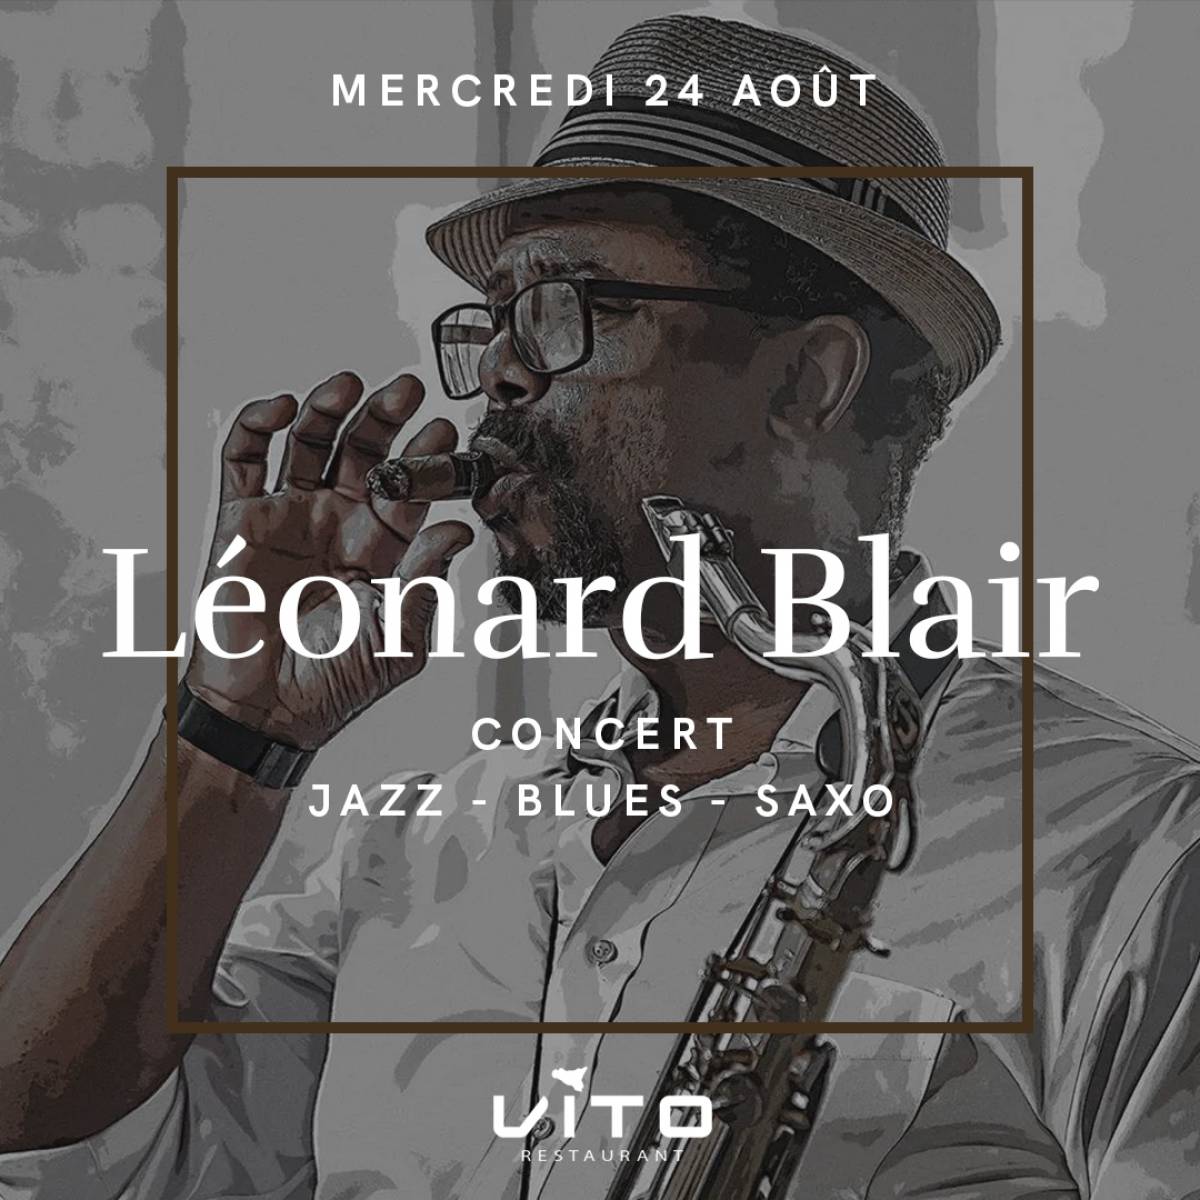 Concert - Léonard Blair